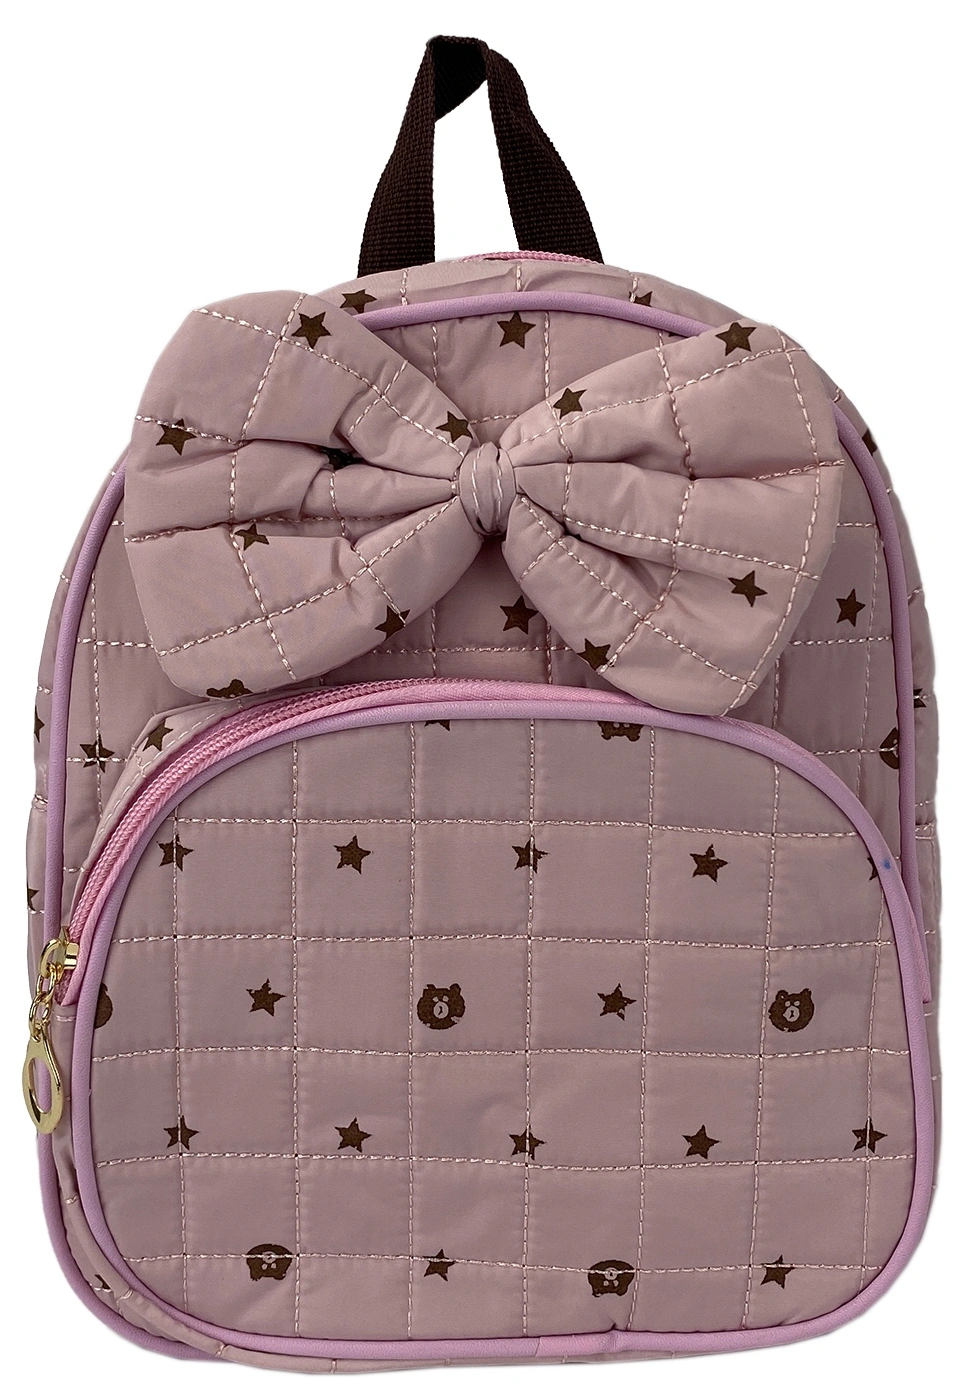 Рюкзак детский фиолетовый  4515-1 фото 1